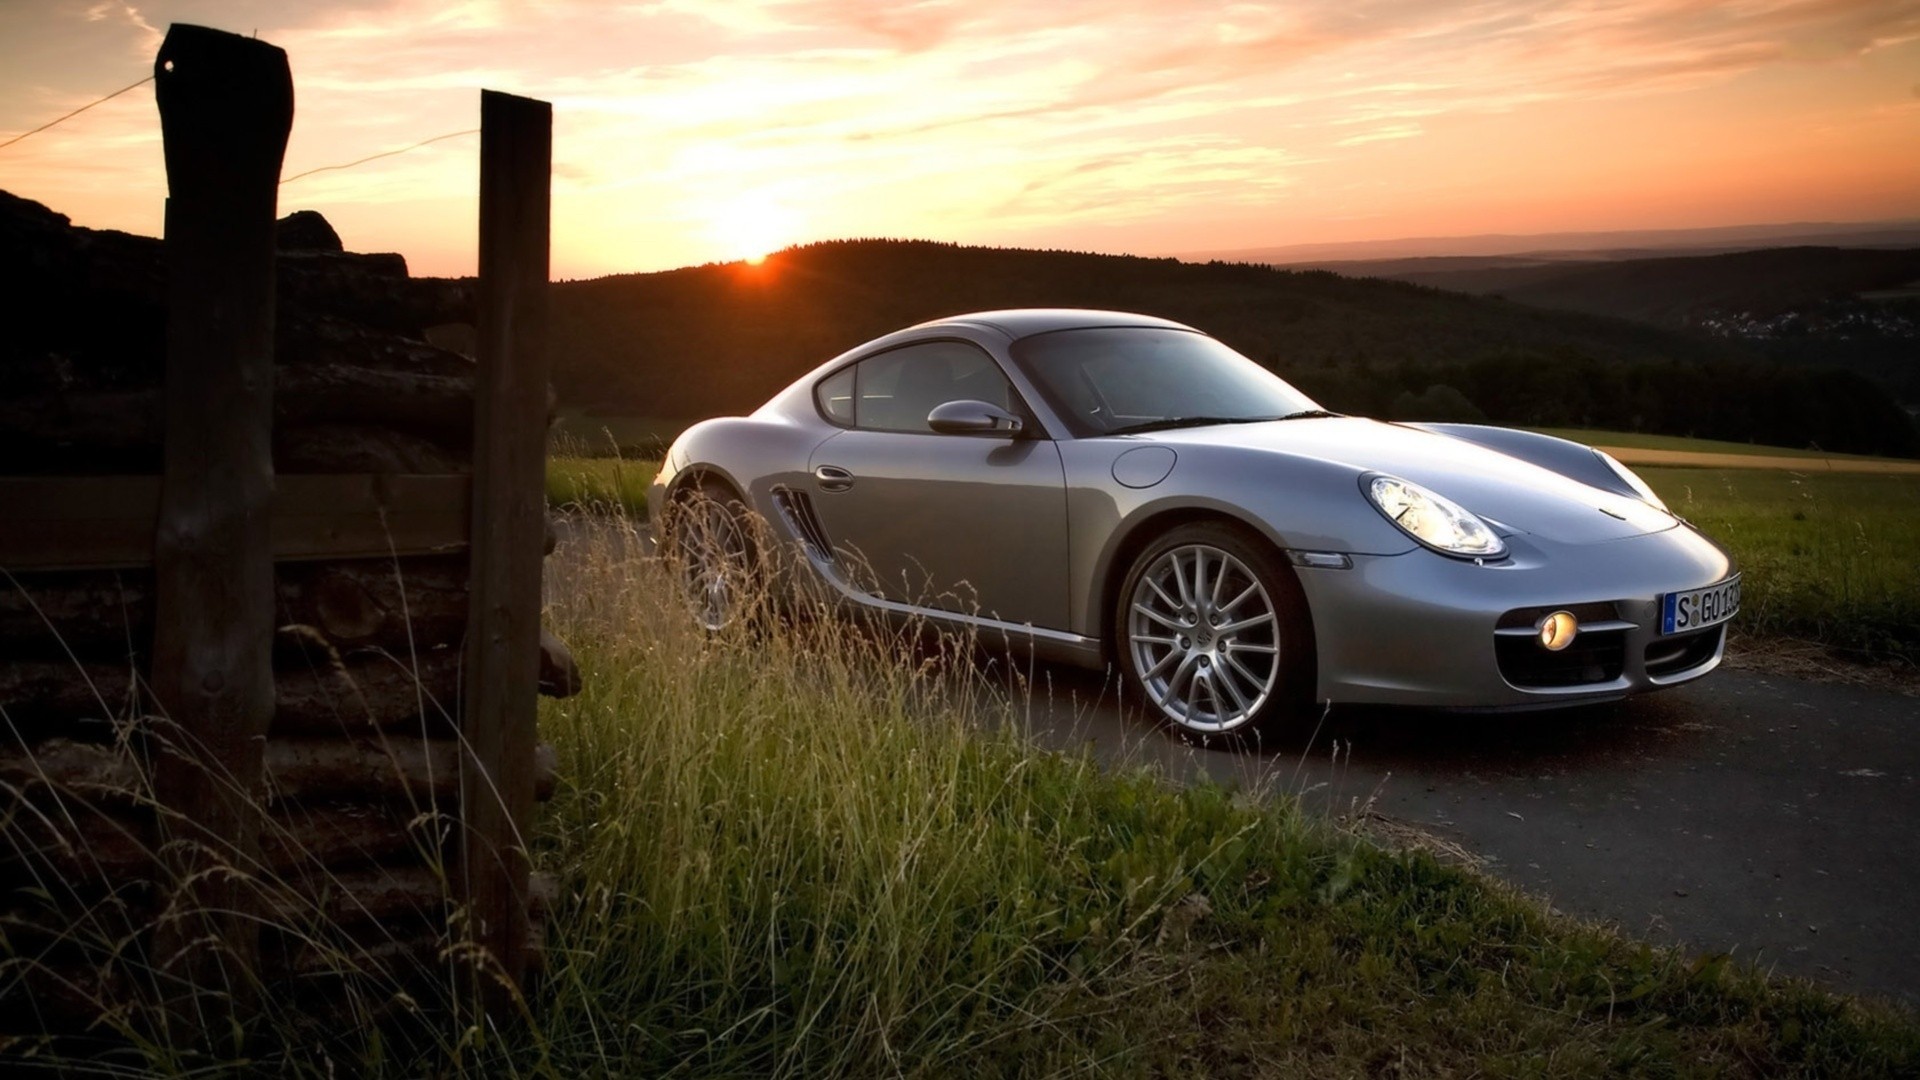 sunset, Porsche, cars - desktop wallpaper